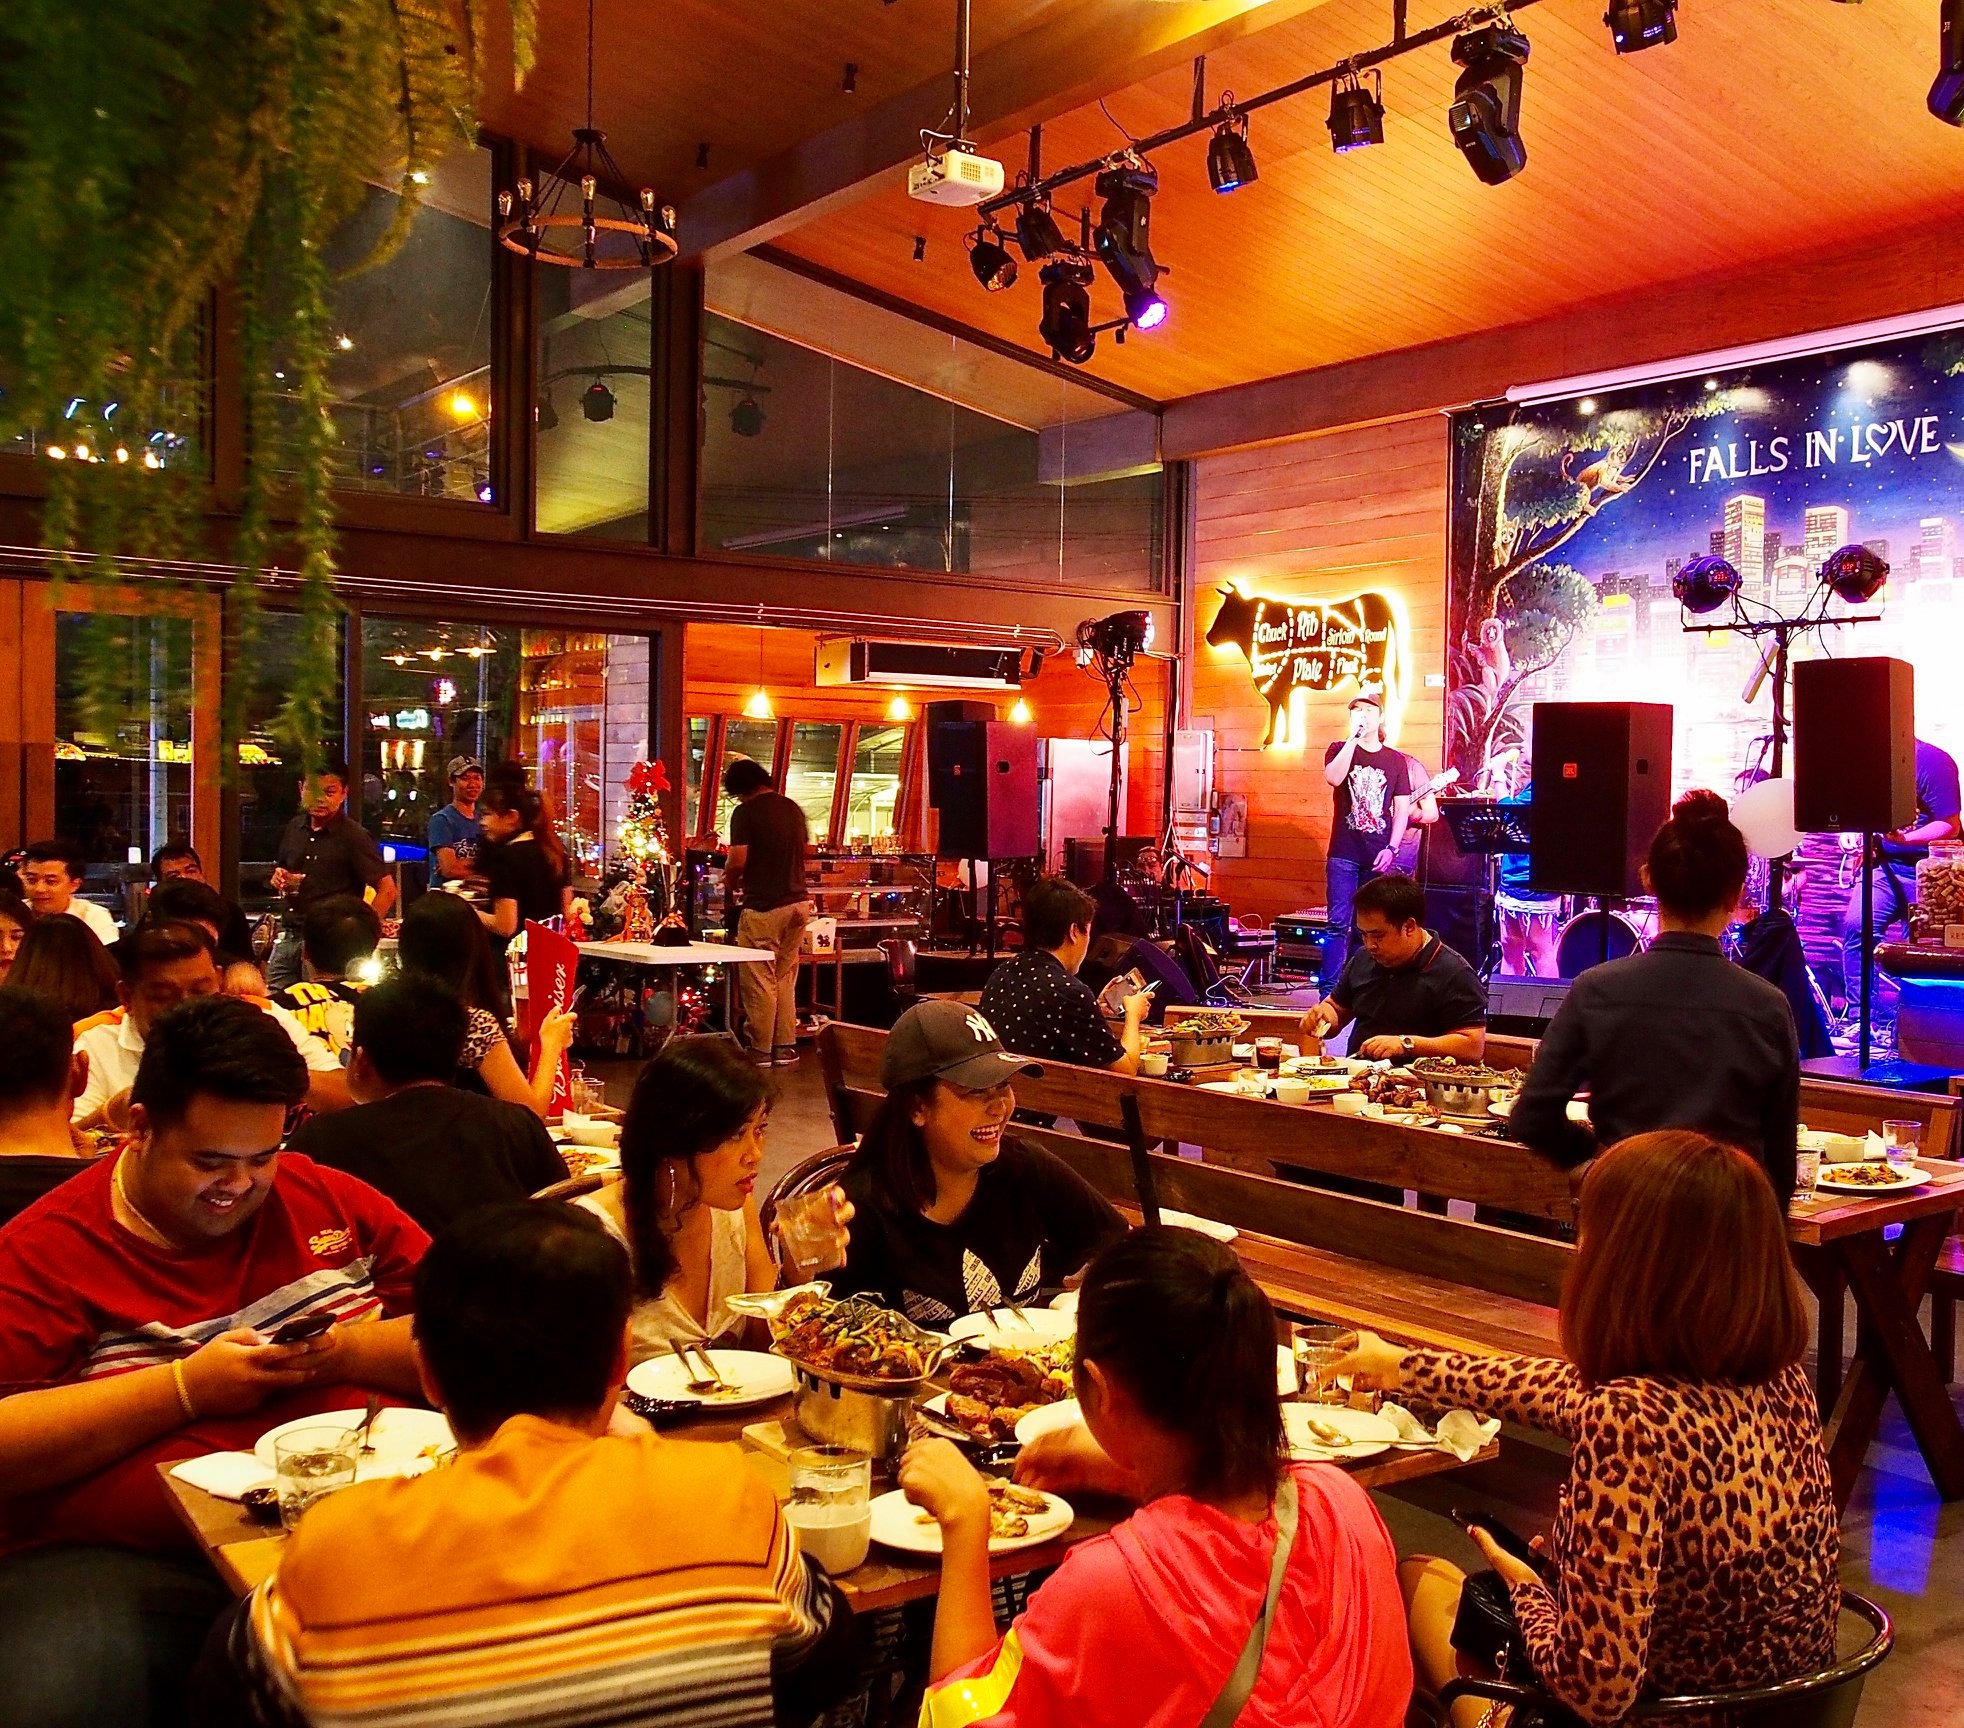 ฟอลส์อินเลิฟ คอฟฟี่ บาร์แอนด์เรสเตอรอง (Falls in Love Coffee-Bar & Restaurant) : กรุงเทพมหานคร (Bangkok)